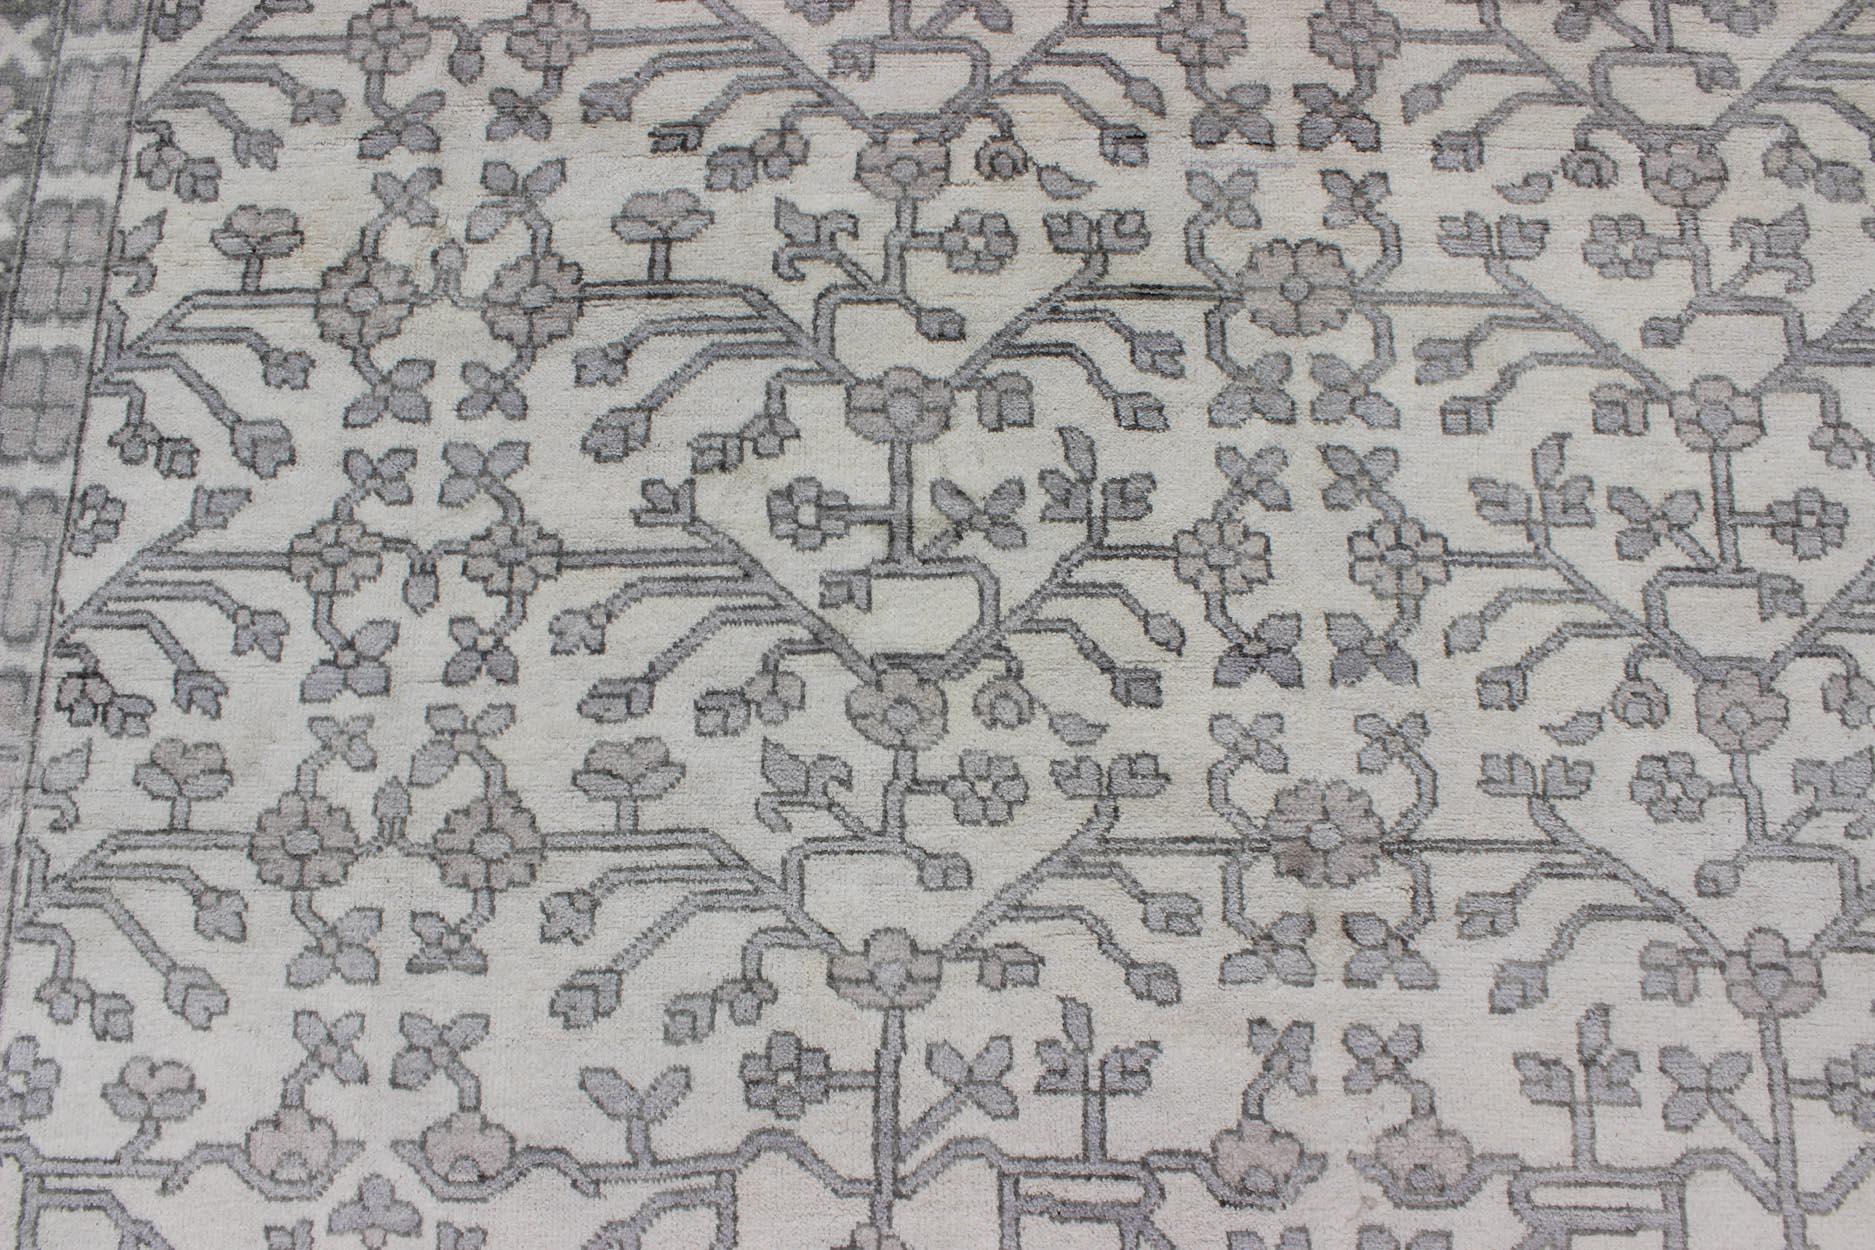 Tapis Khotan en laine avec design/One en crème et gris par Keivan Woven Arts 
Mesures : 9'6 x 13'6.  
Ce tapis moderne indien Khotan a été noué à la main en laine et présente un motif subgéométrique sur toute sa surface dans des tons crème et gris.